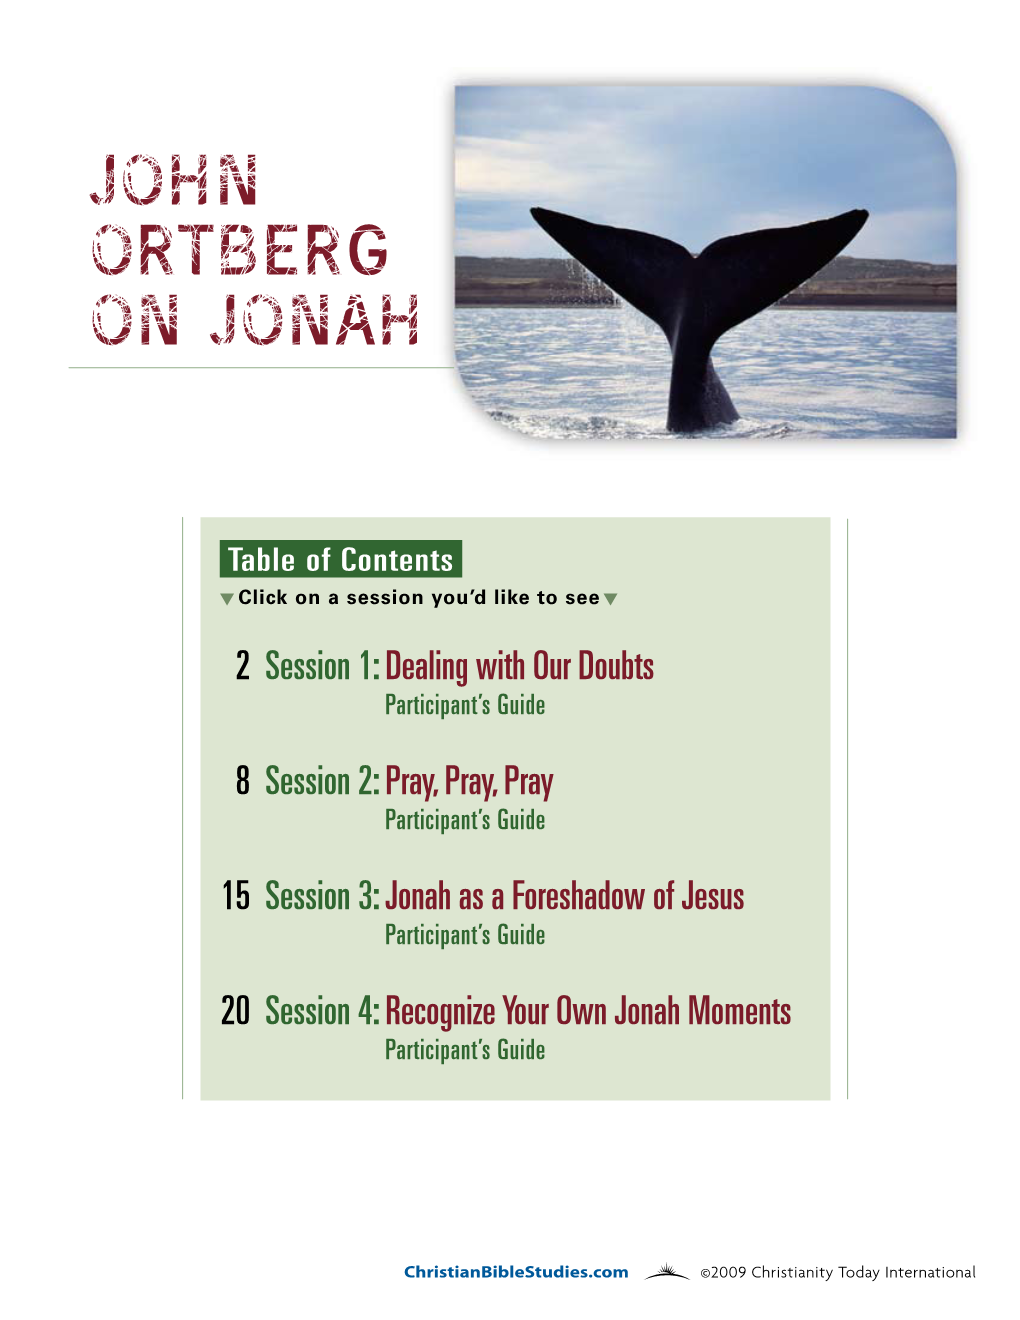 John Ortberg on Jonah